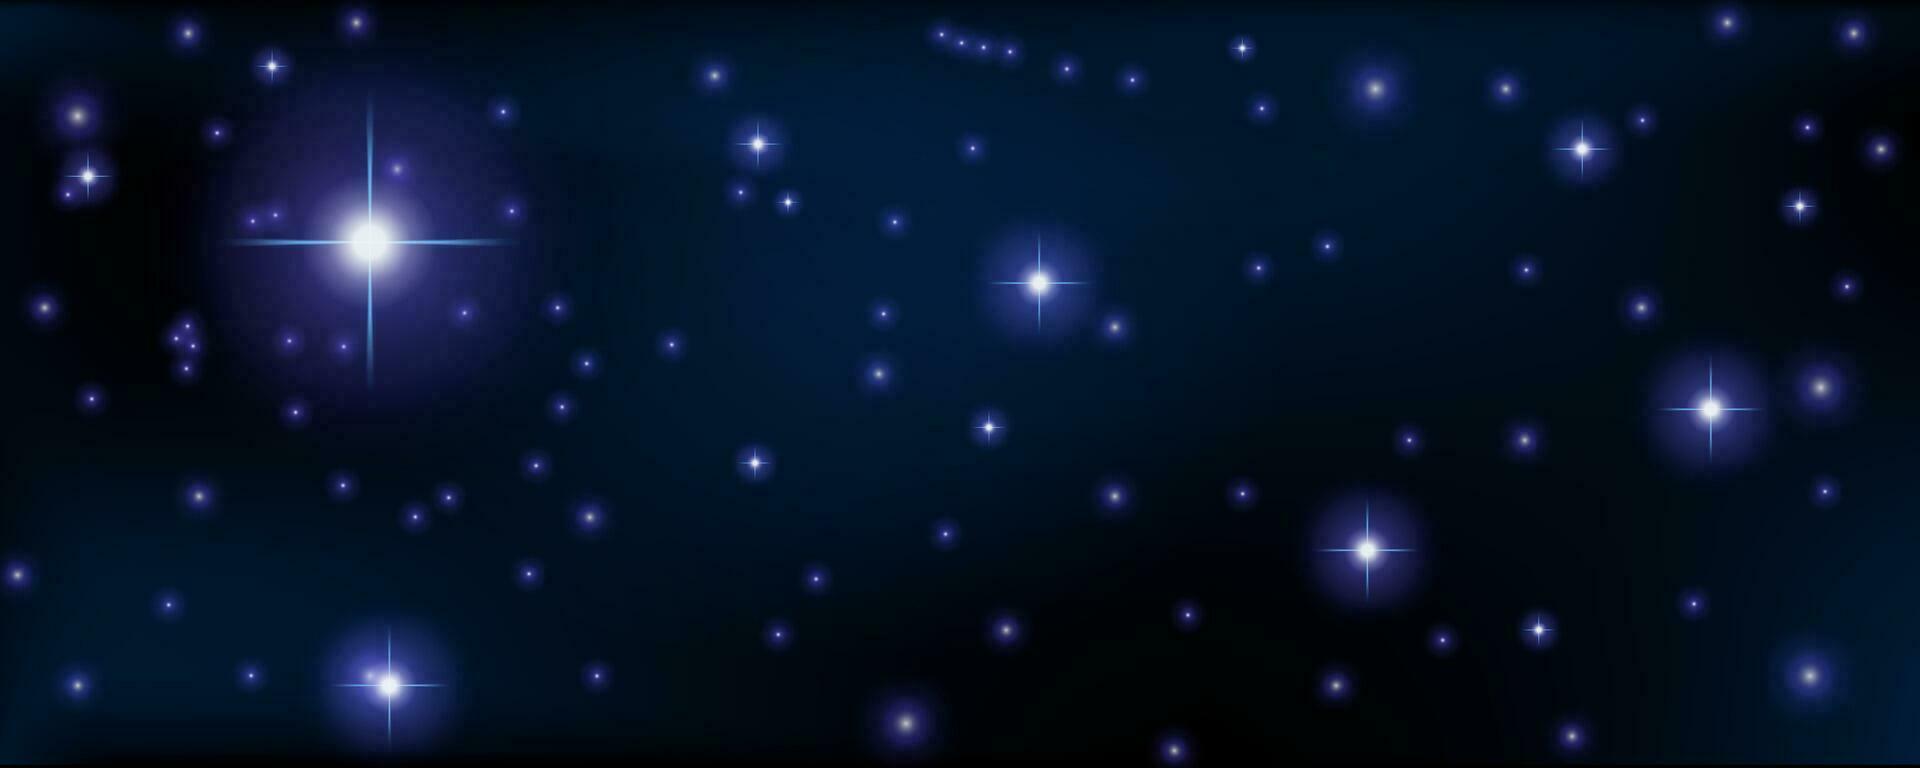 begrepp av webb baner. magi Färg galax. horisontell Plats bakgrund med realistisk nebulosa, stardust och lysande stjärnor. oändlig universum och starry natt himmel. vektor